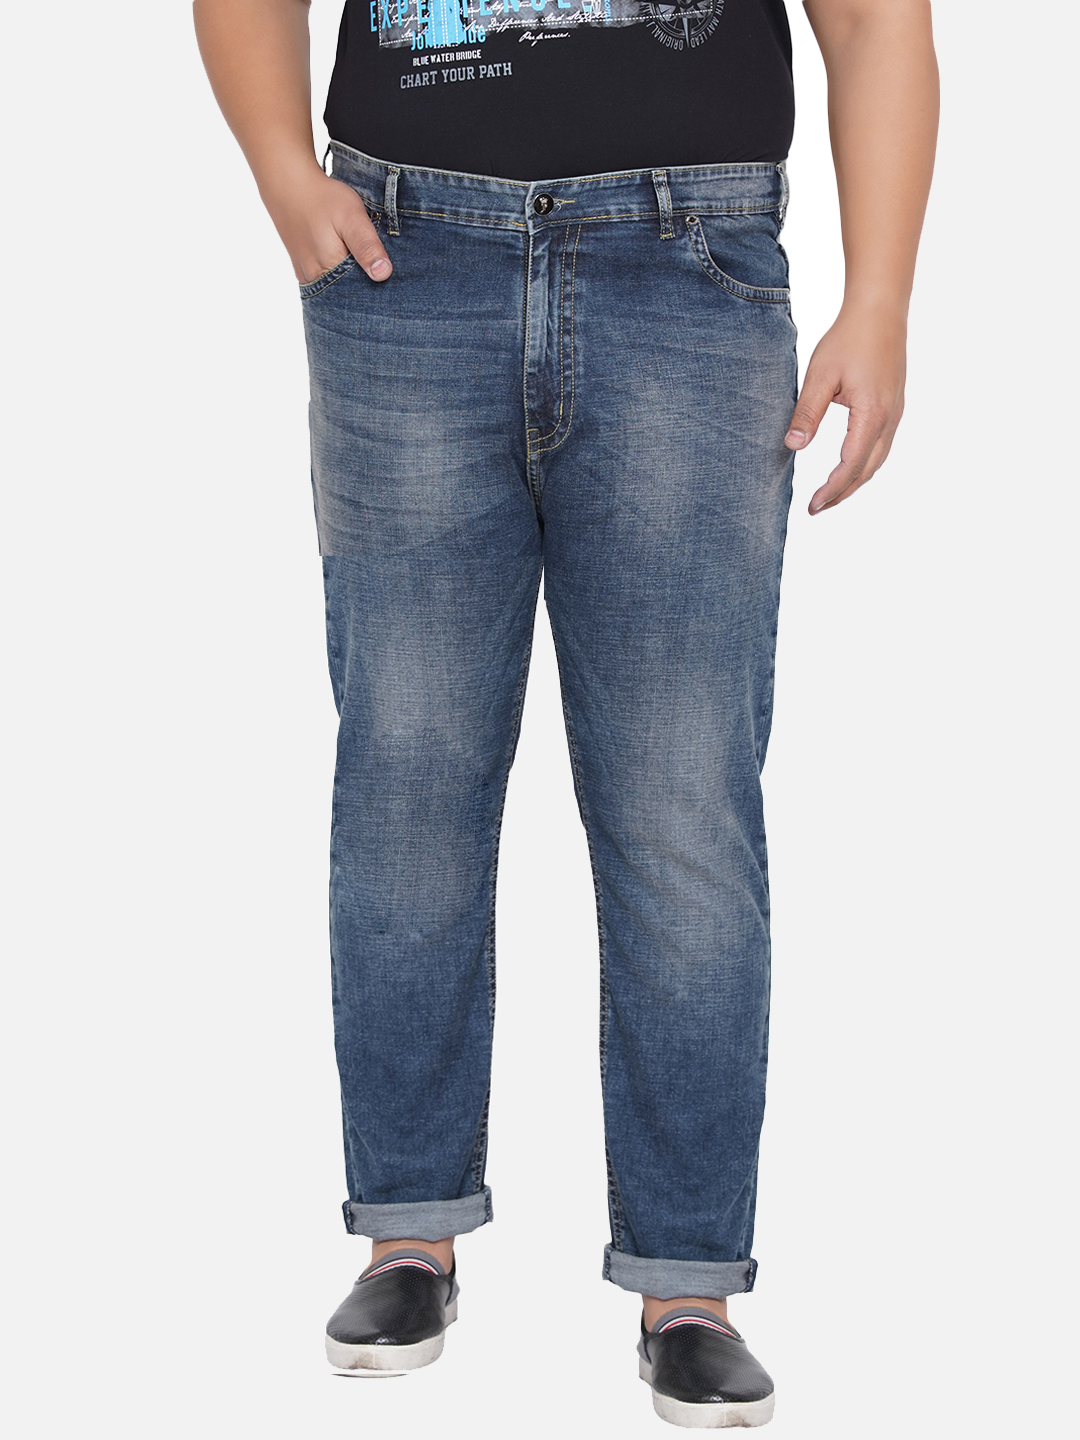 bottomwear/jeans/PJPJ6046/pjpj6046-3.jpg